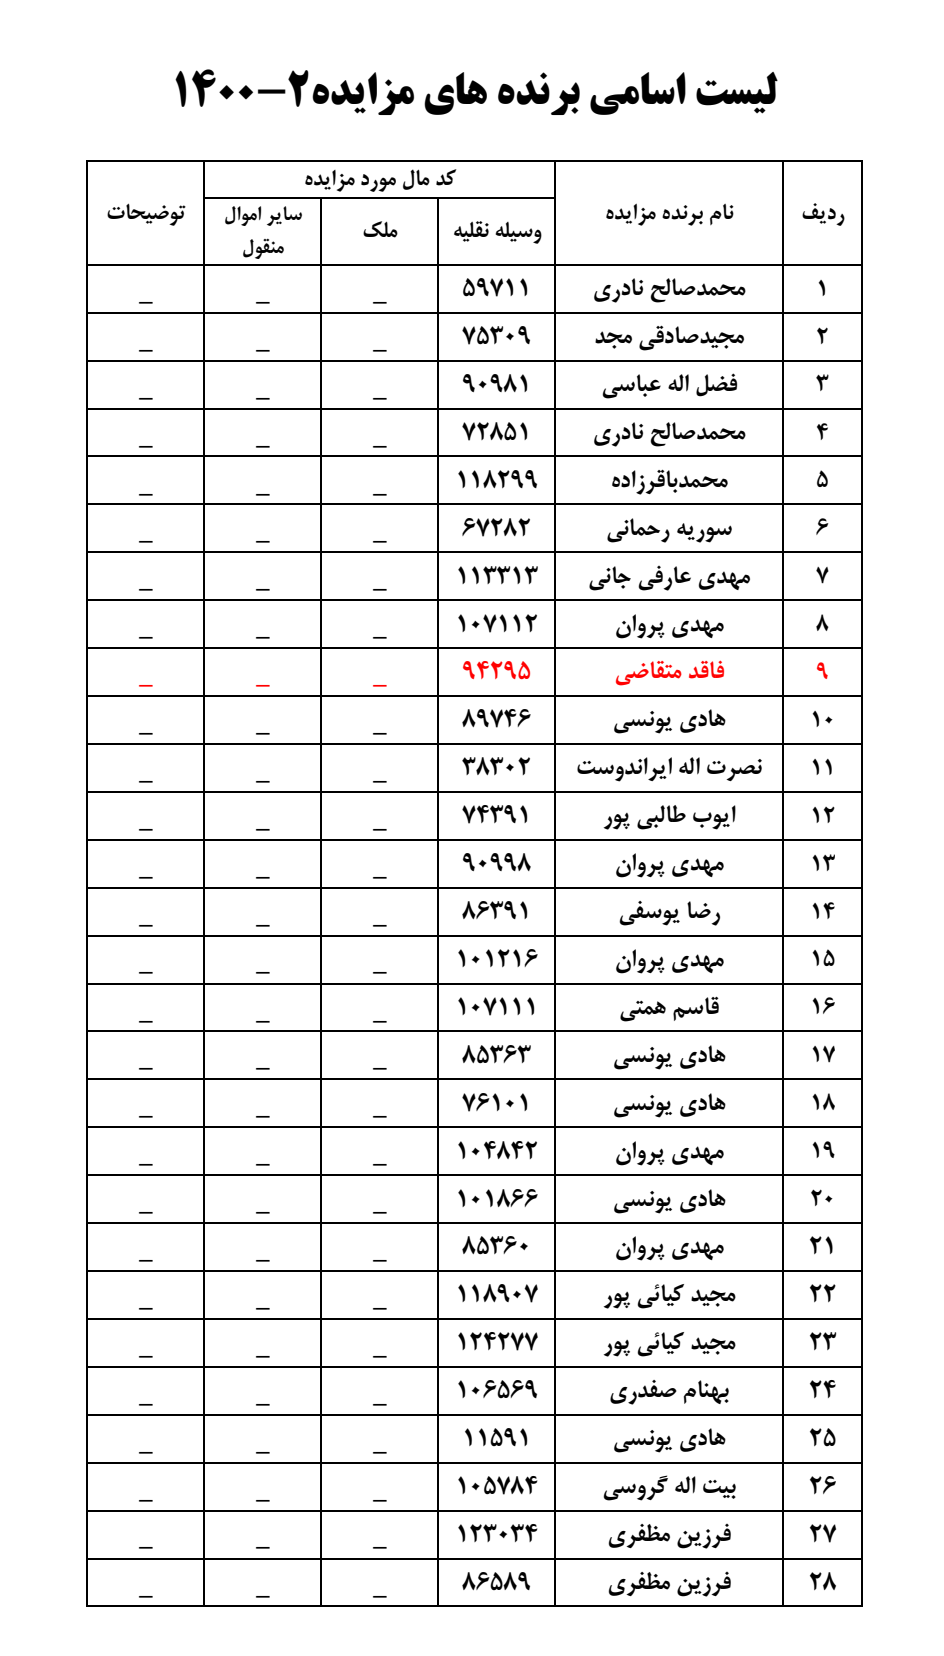 لیست برندگان مزایده خودروی  قزوین به تاریخ 9 بهمن 1400 